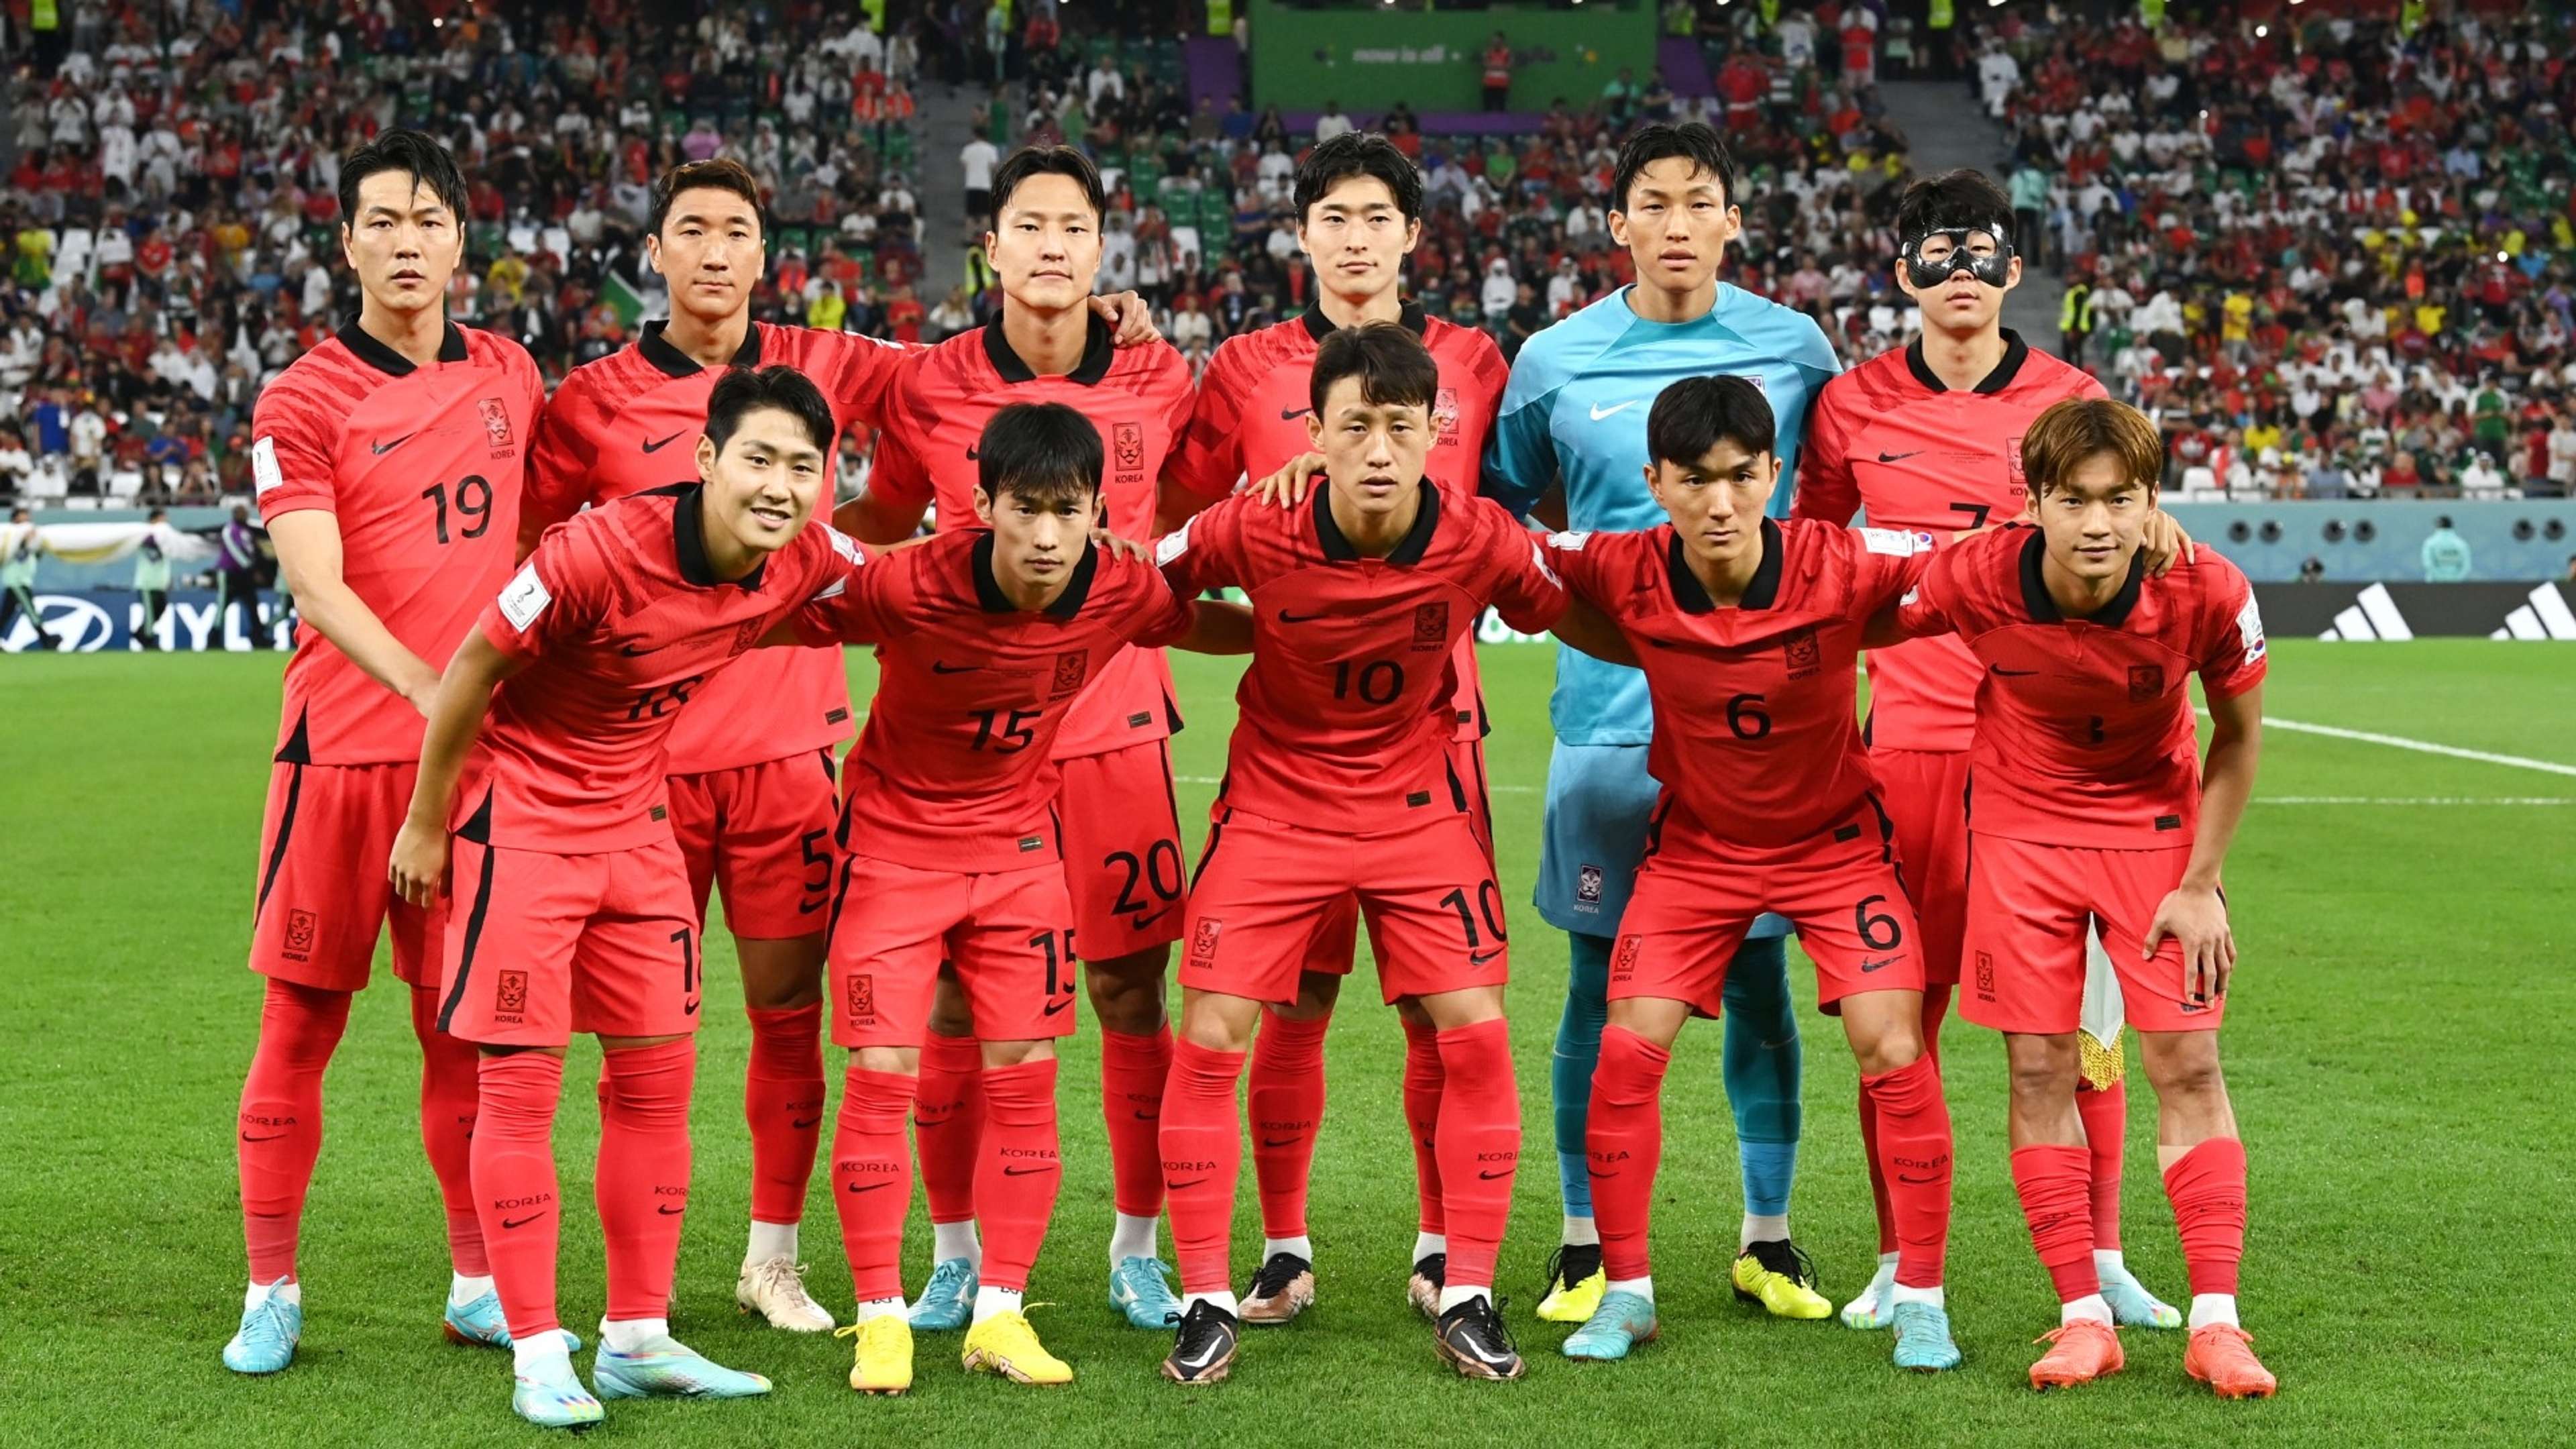 korea team photo